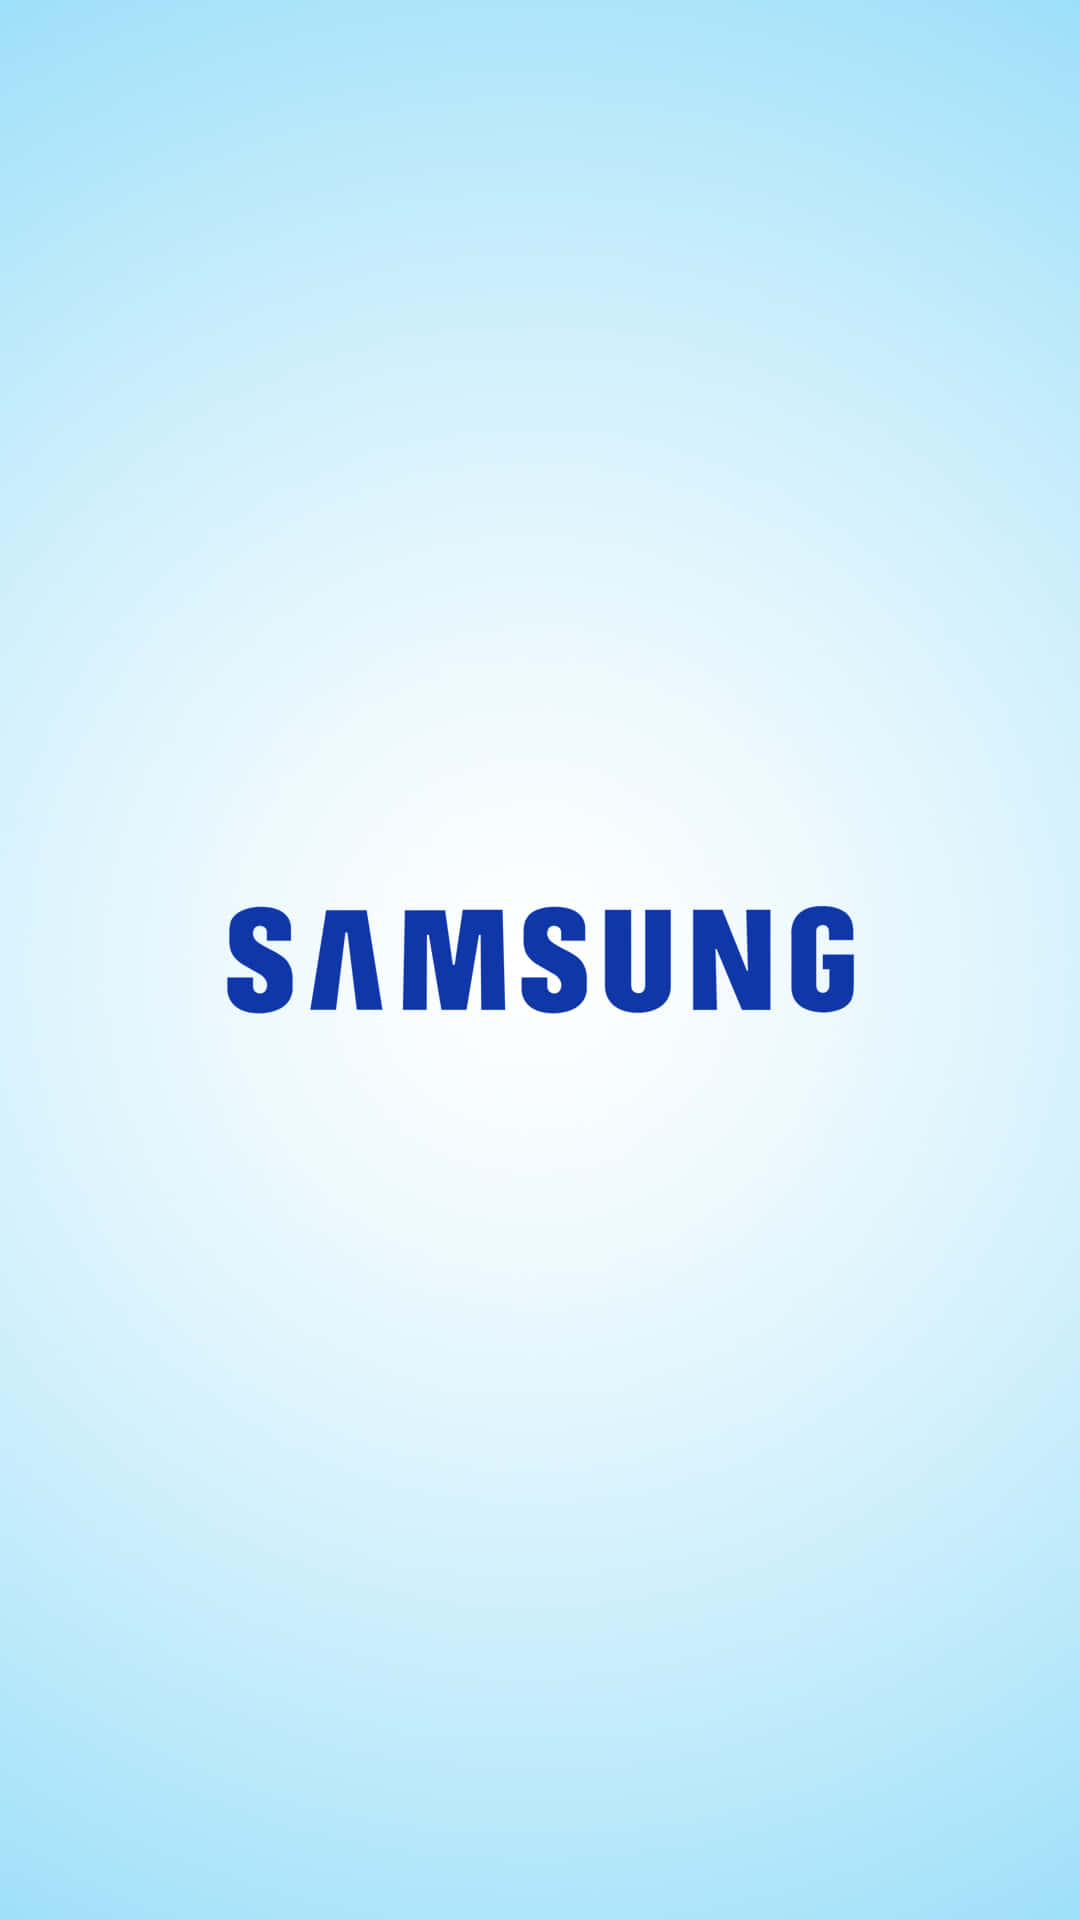 Fåen Fremtidsorienteret Oplevelse Med Samsung - Udforsk Avanceret Teknologi I Dag.